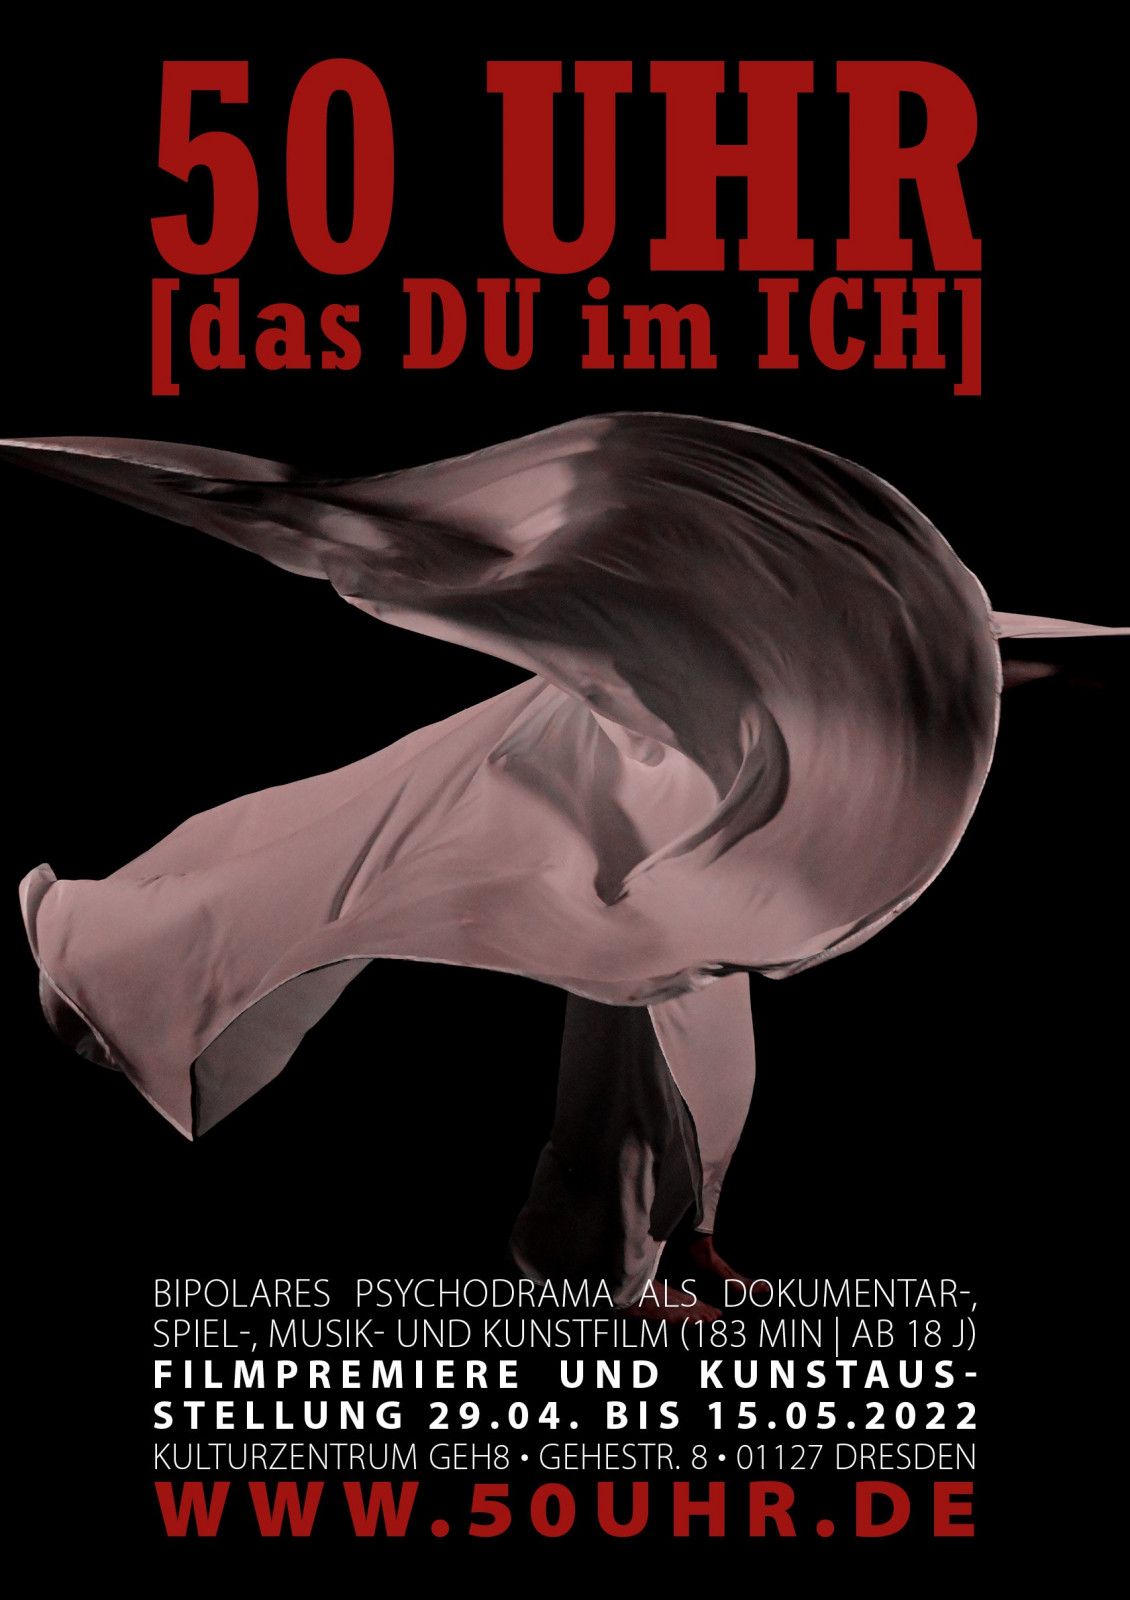 50_UHR_Plakat_Premiere-dadf2cbf Bipolares Psychodrama „50 UHR [das DU im ICH]“ | www.50UHR.de